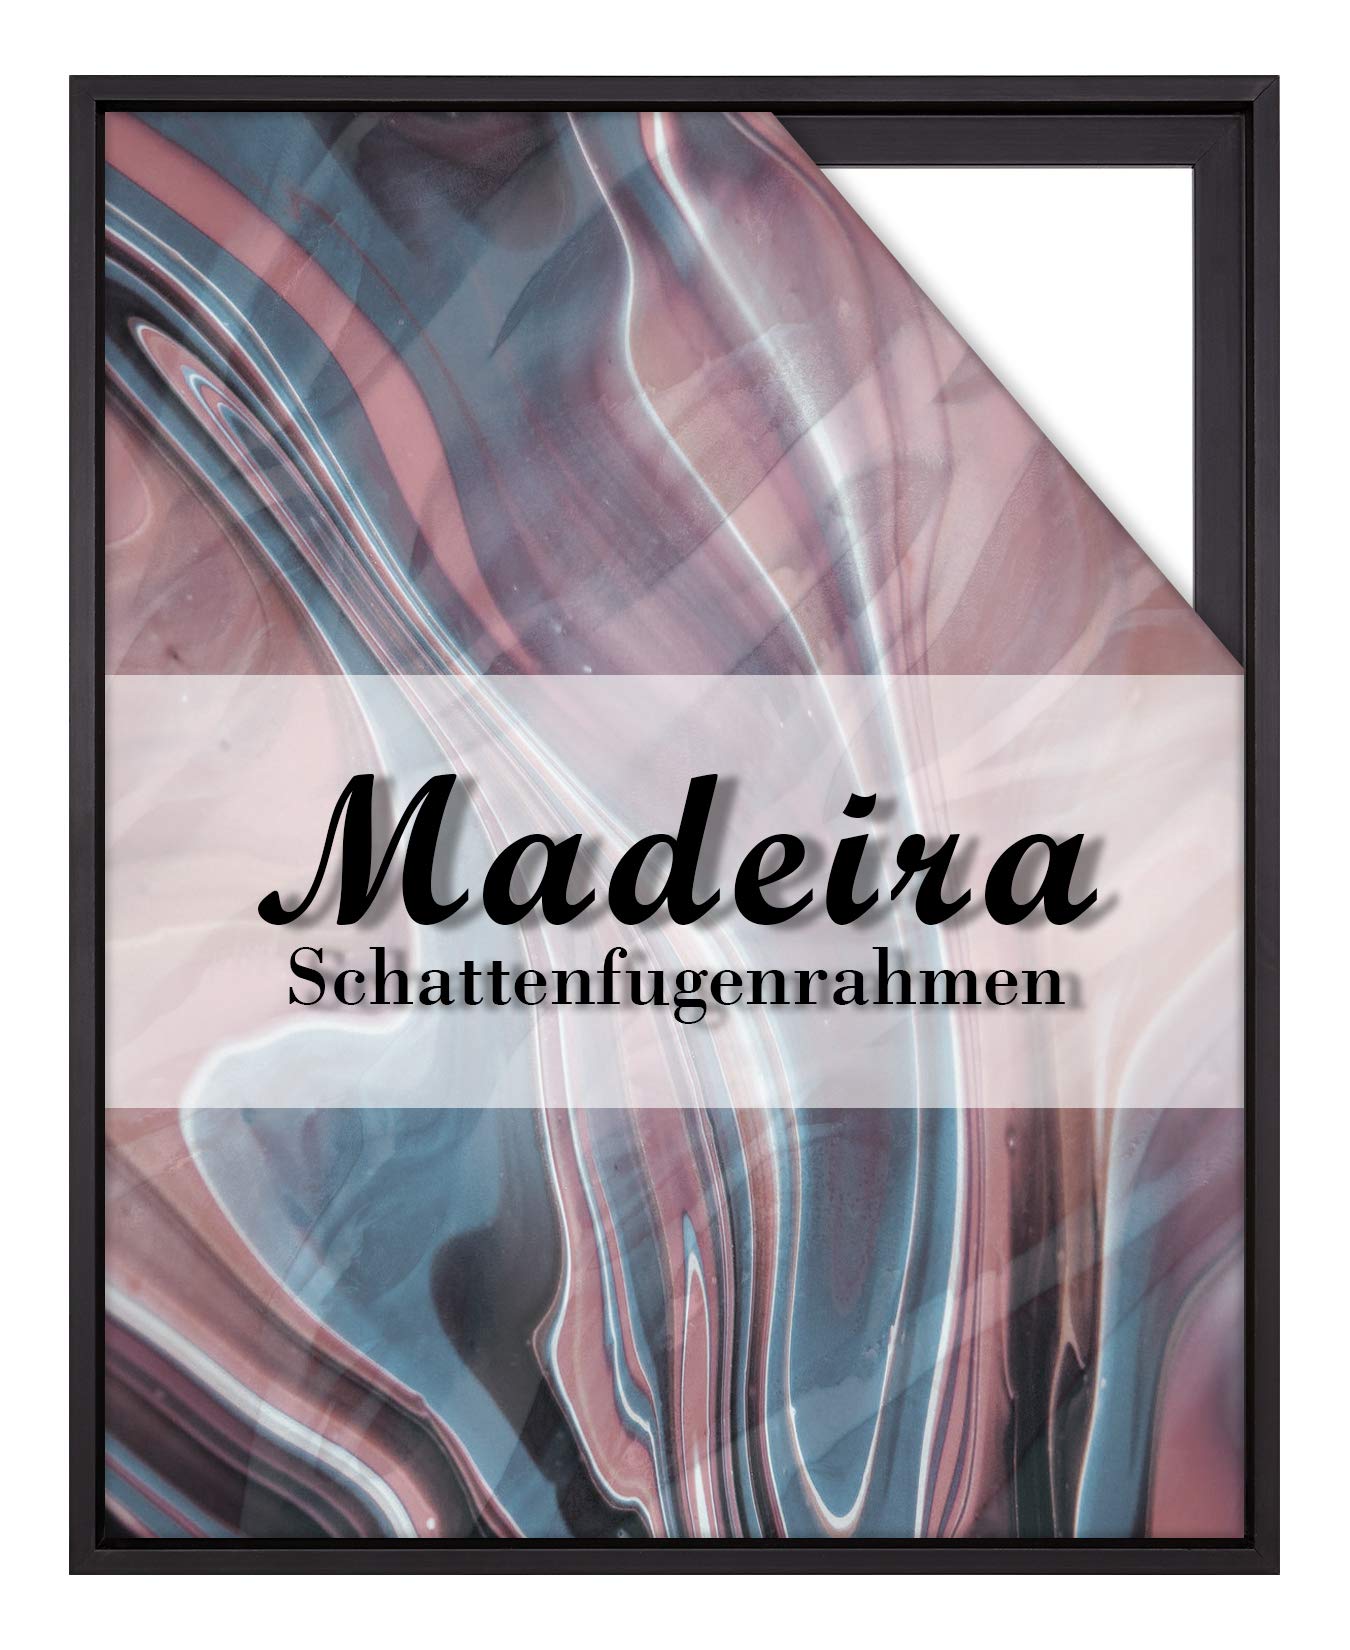 BIRAPA Madeira Schattenfugenrahmen für Leinwand 60x100 cm in Schwarz, Holzrahmen, Rahmen für Leinwände, Leerrahmen für Leinwand, Schattenfugenrahmen für Keilrahmen